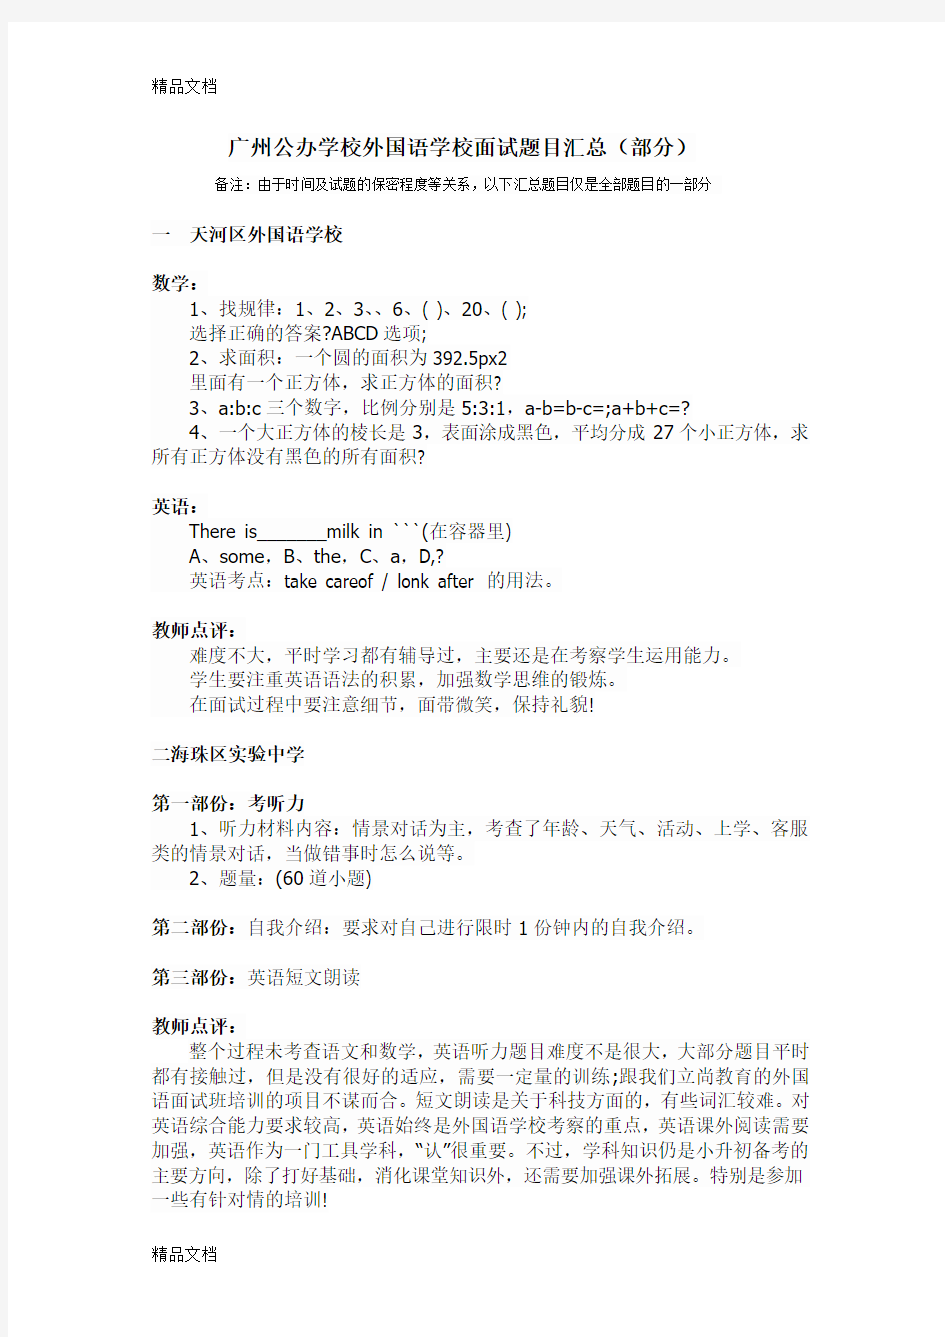 最新广州公办学校外国语学校面试题目汇总(部分)